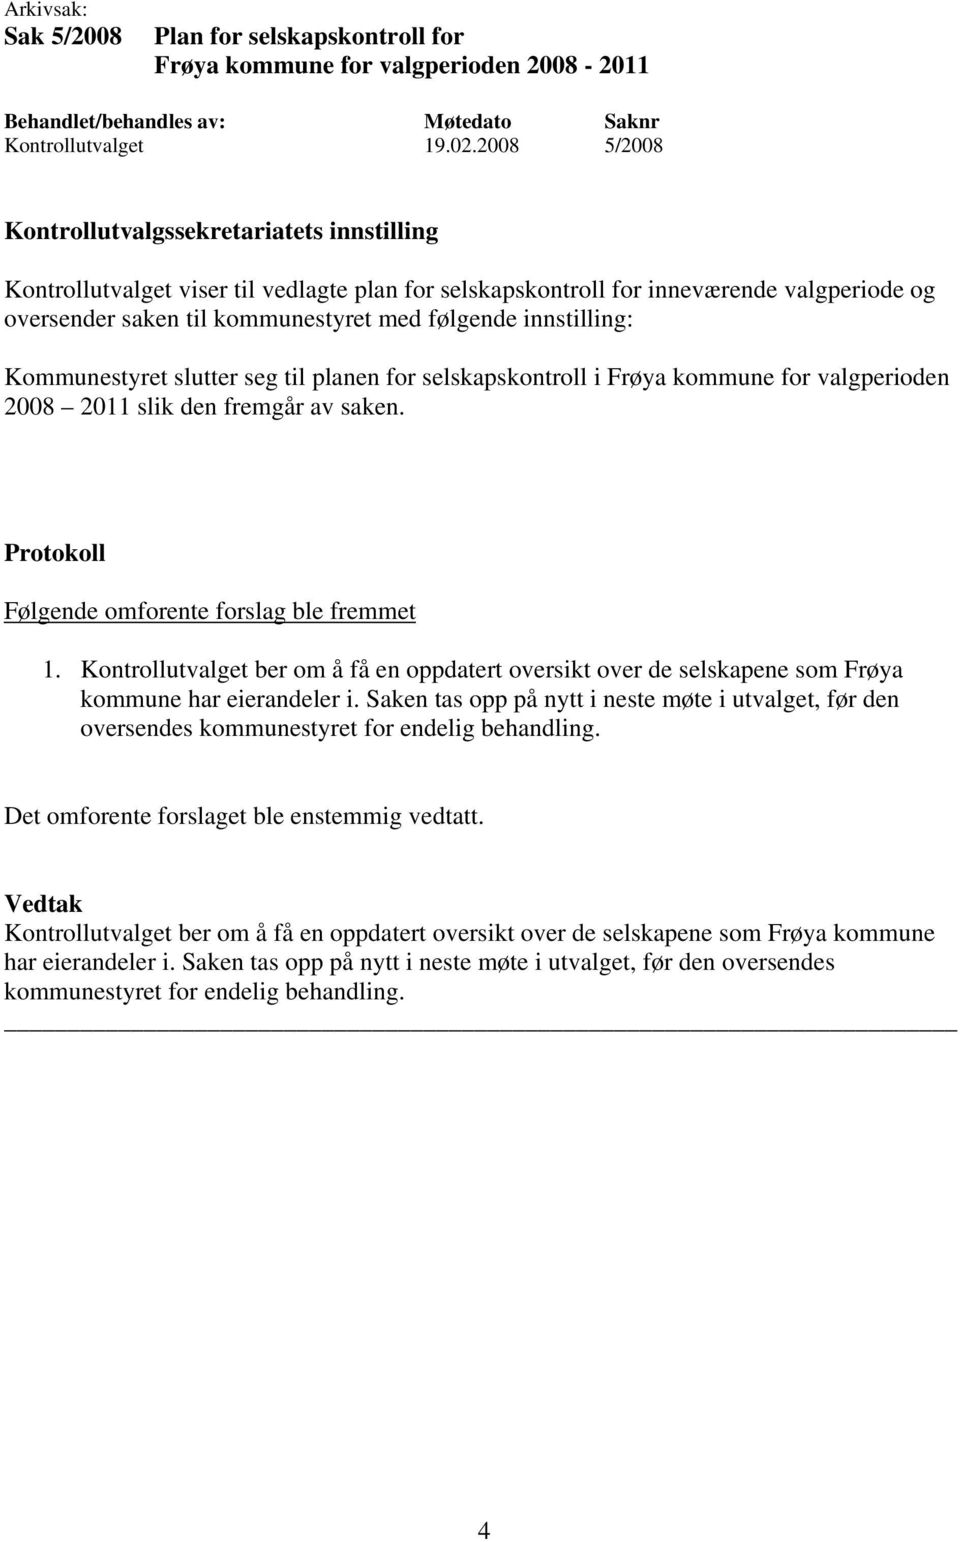 planen for selskapskontroll i Frøya kommune for valgperioden 2008 2011 slik den fremgår av saken. Følgende omforente forslag ble fremmet 1.